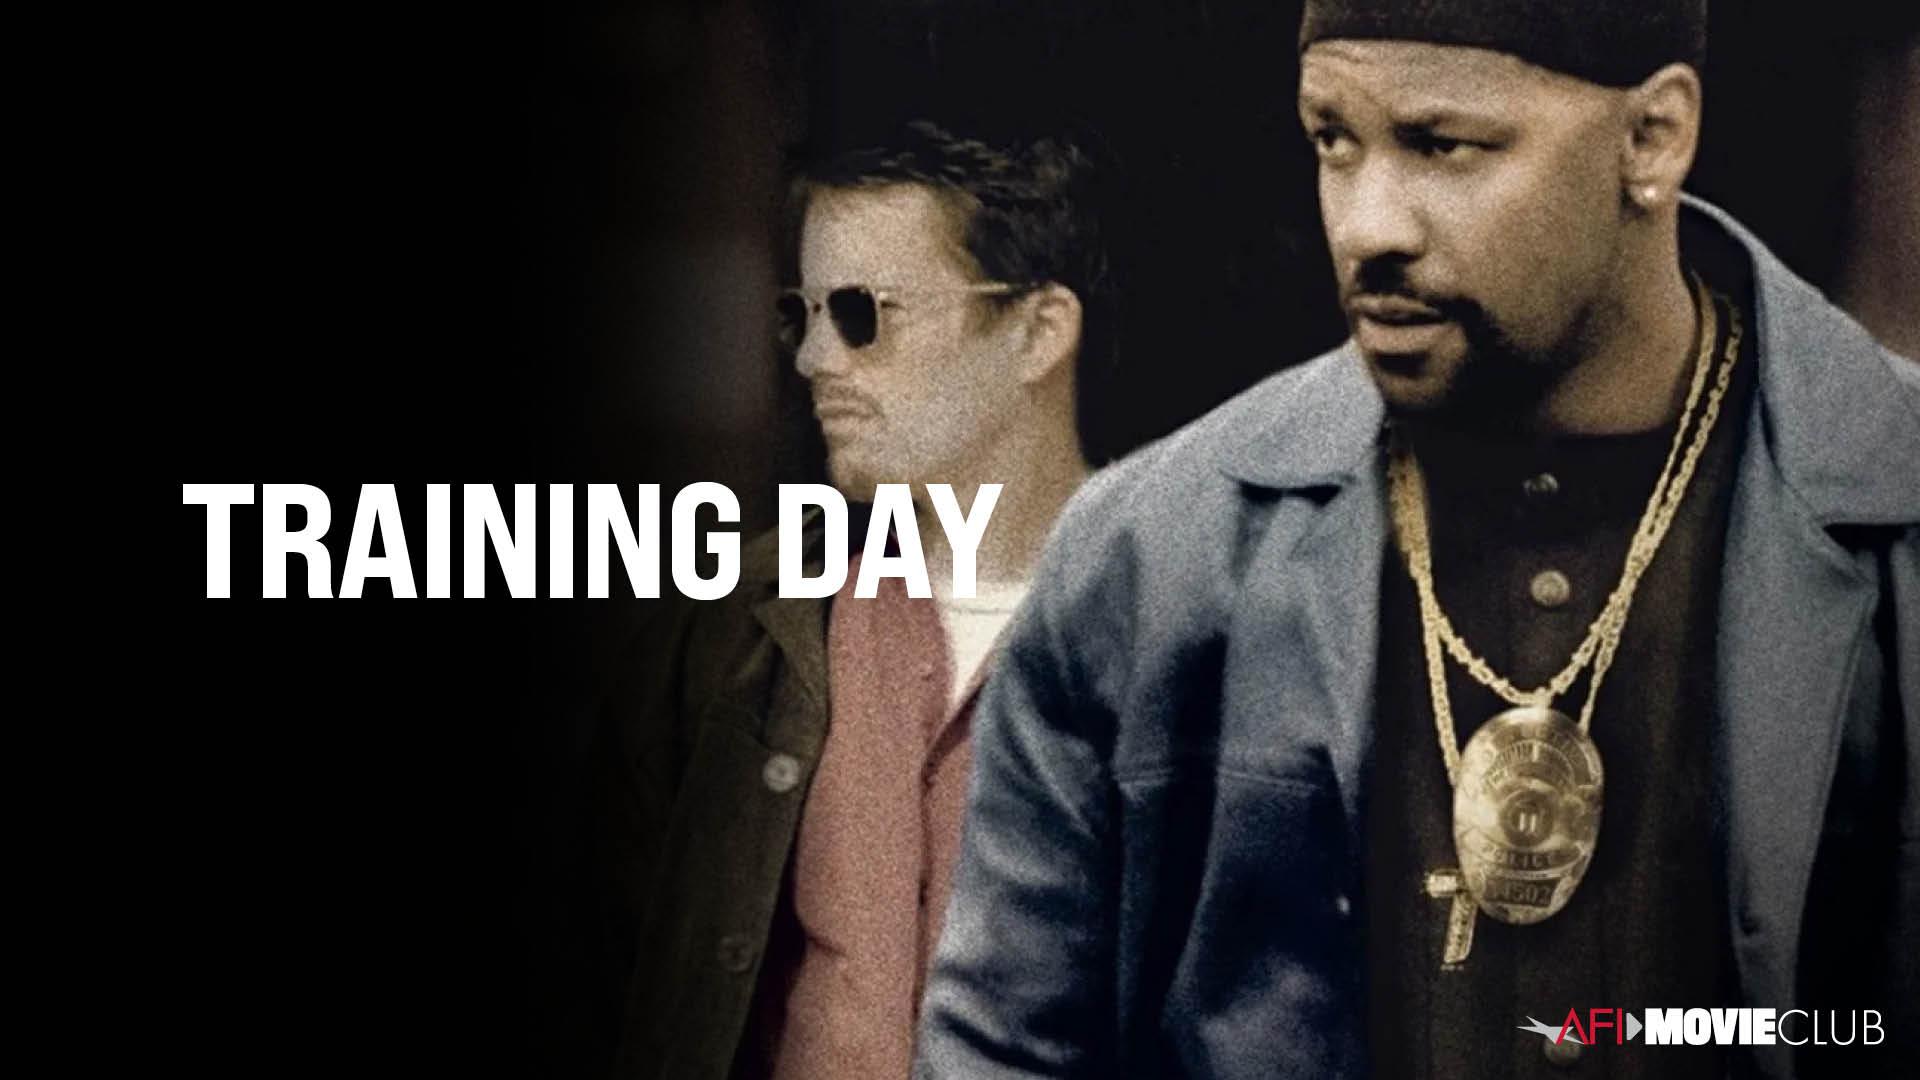 Training Day Film Still - Ethan Hawke and Denzel Washington